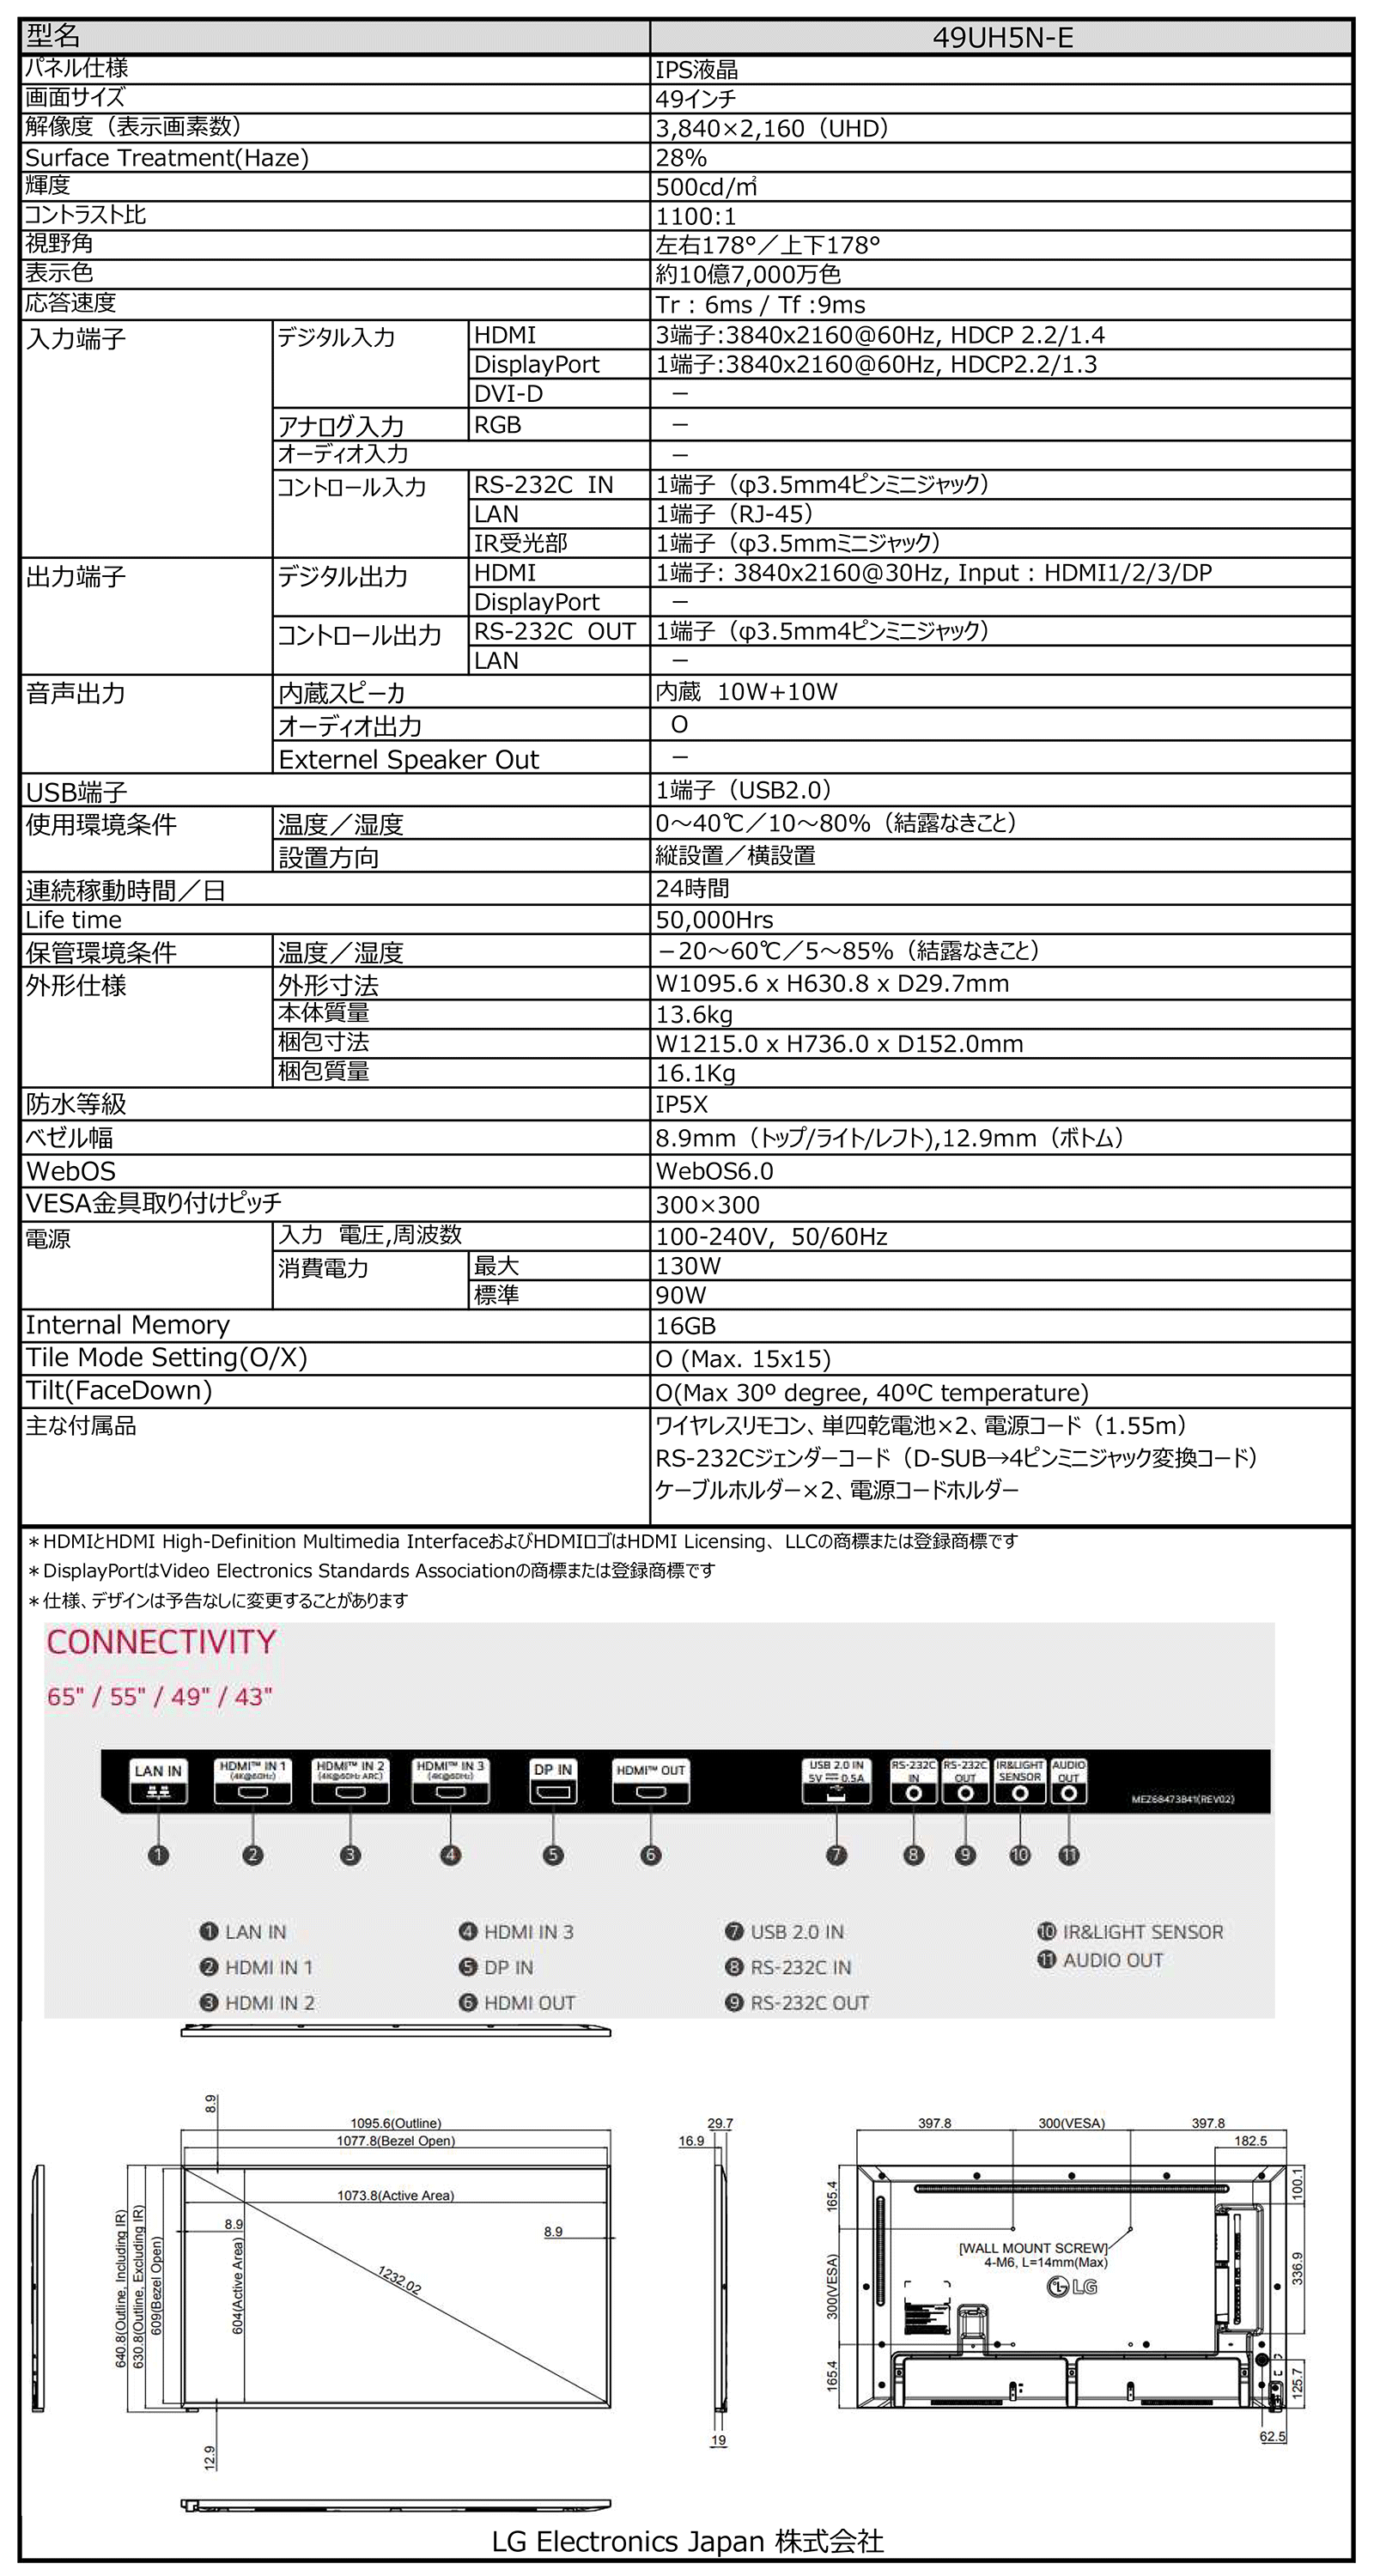 UHDサイネージディスプレイ - 49UH5N-E | LG JP